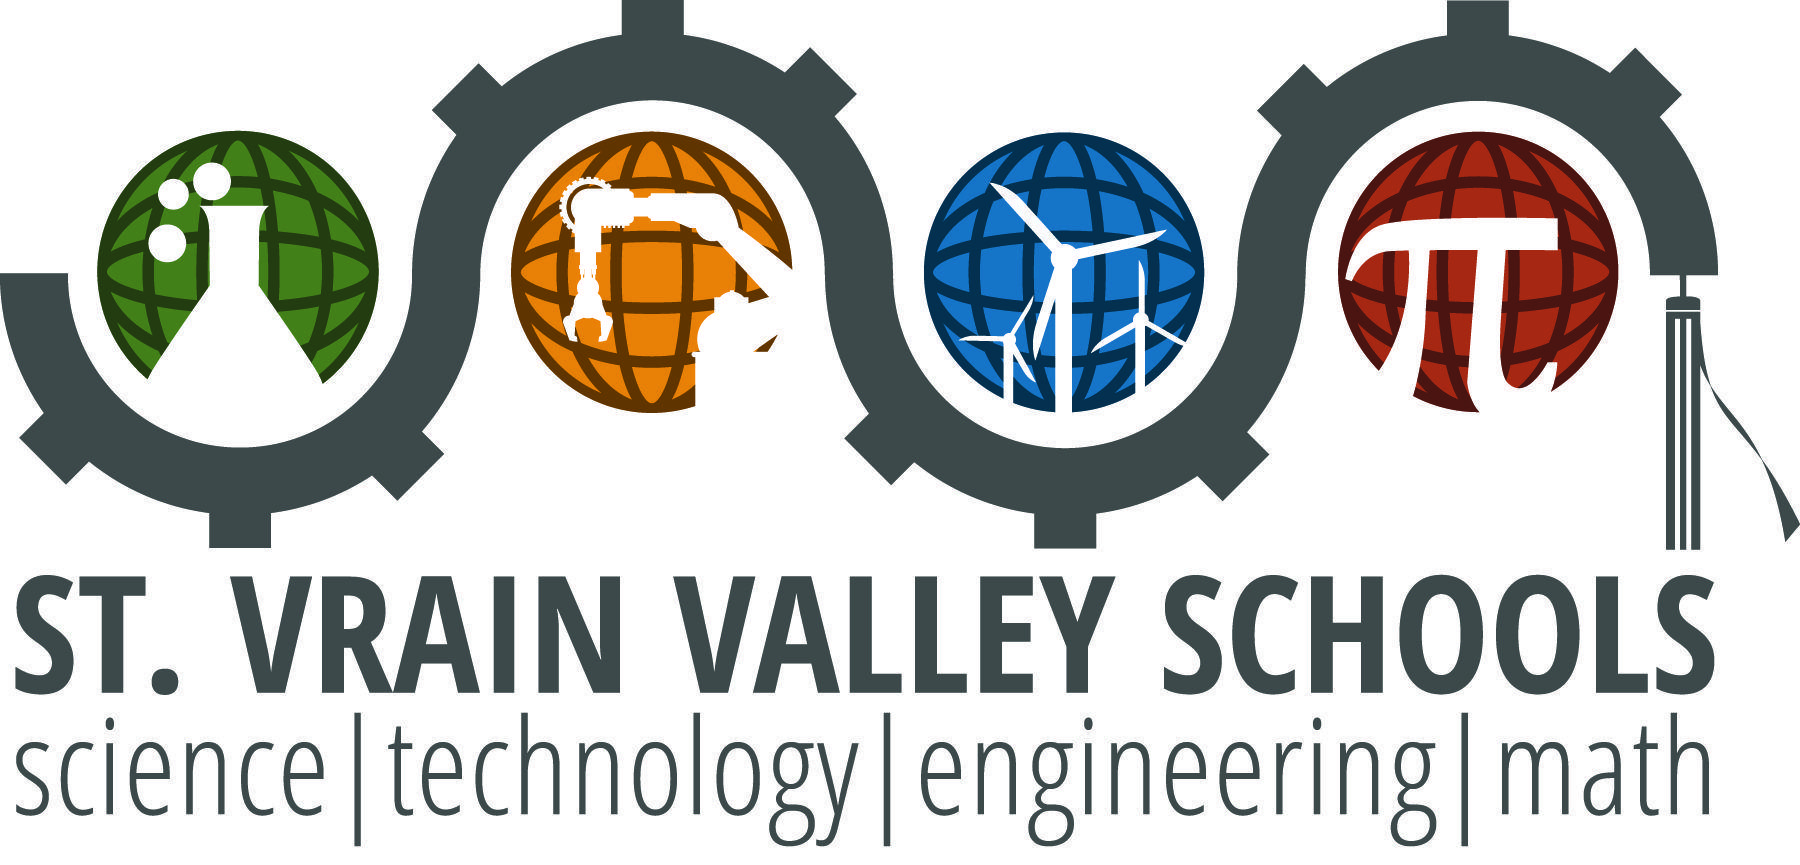 Stem Logo - STEM Logos